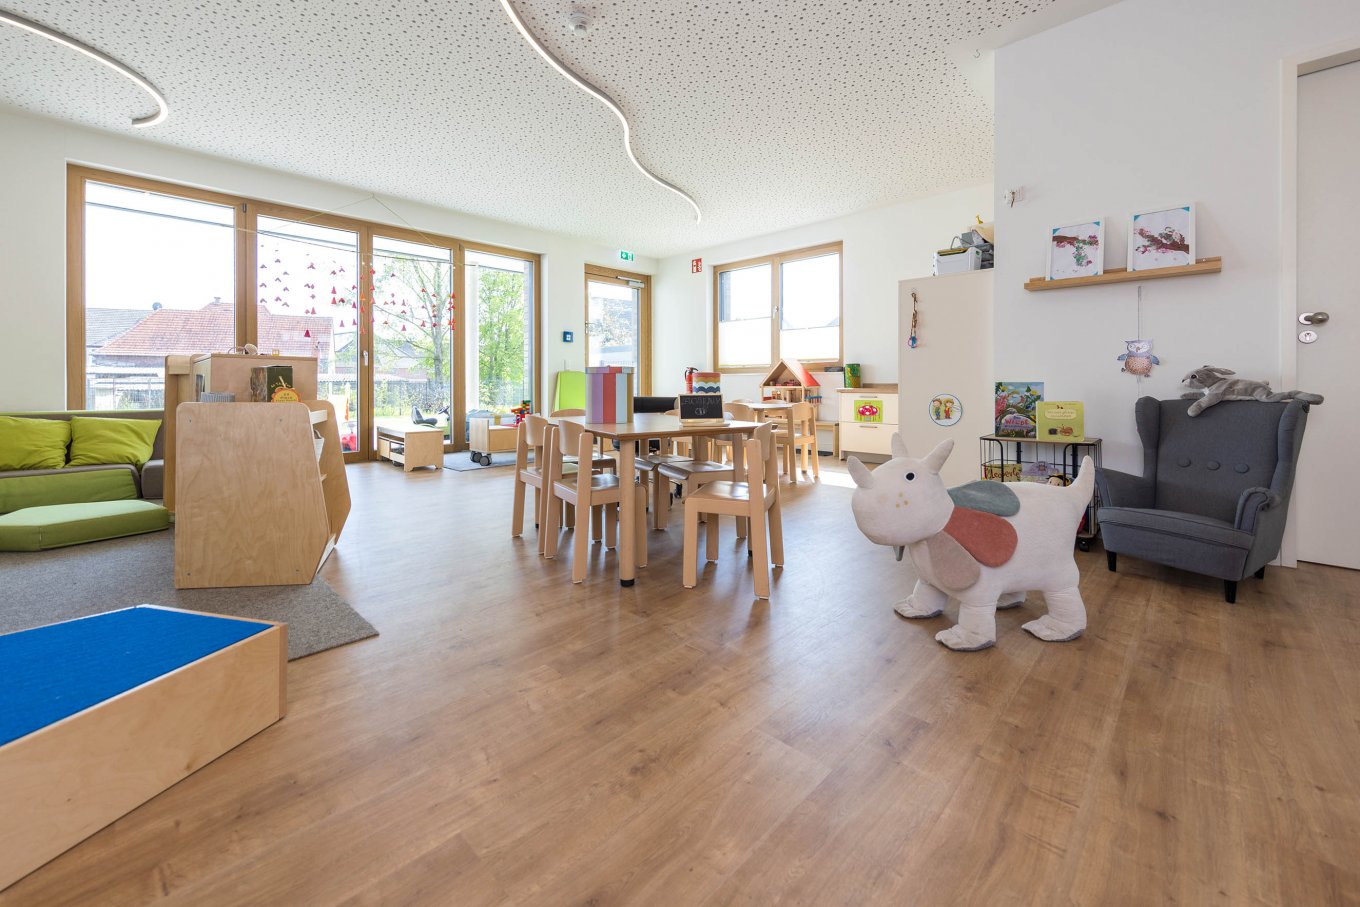 wineo PURLINE Bioboden in Kita Kindergarten Fußboden Holzoptik moderne Einrichtung Tische Stühle Spielgeräte Kindertagesstätte